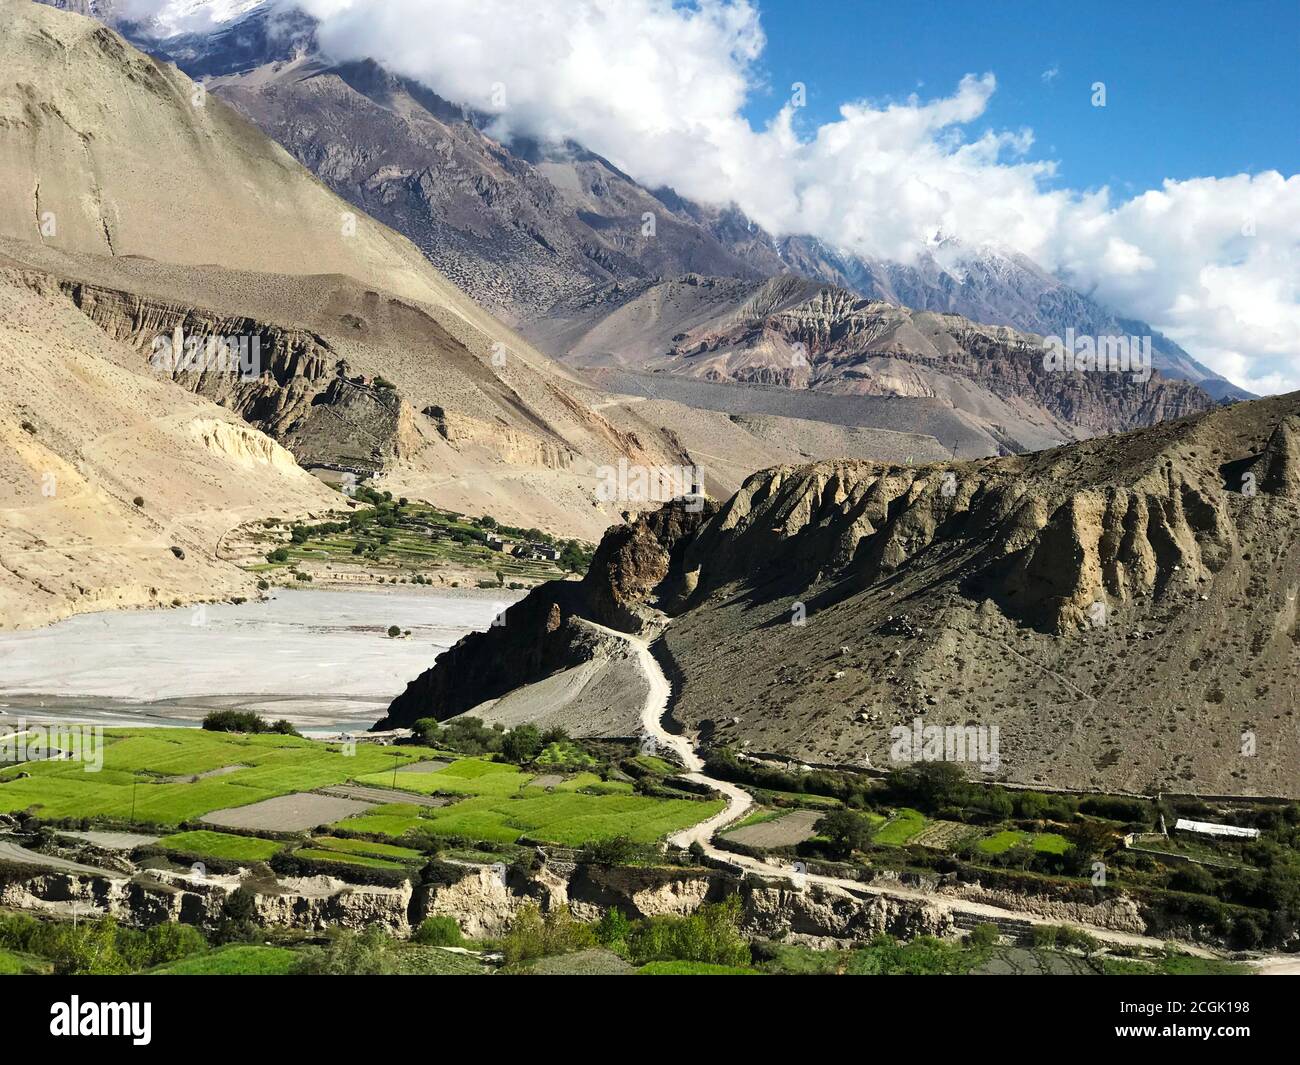 Vue panoramique sur la vallée de Kali Gandaki, Mustang, Népal Himalaya. Magnifique paysage de montagne. Été en montagne. Scène rurale. Village Kagbeni.champs verts. Banque D'Images